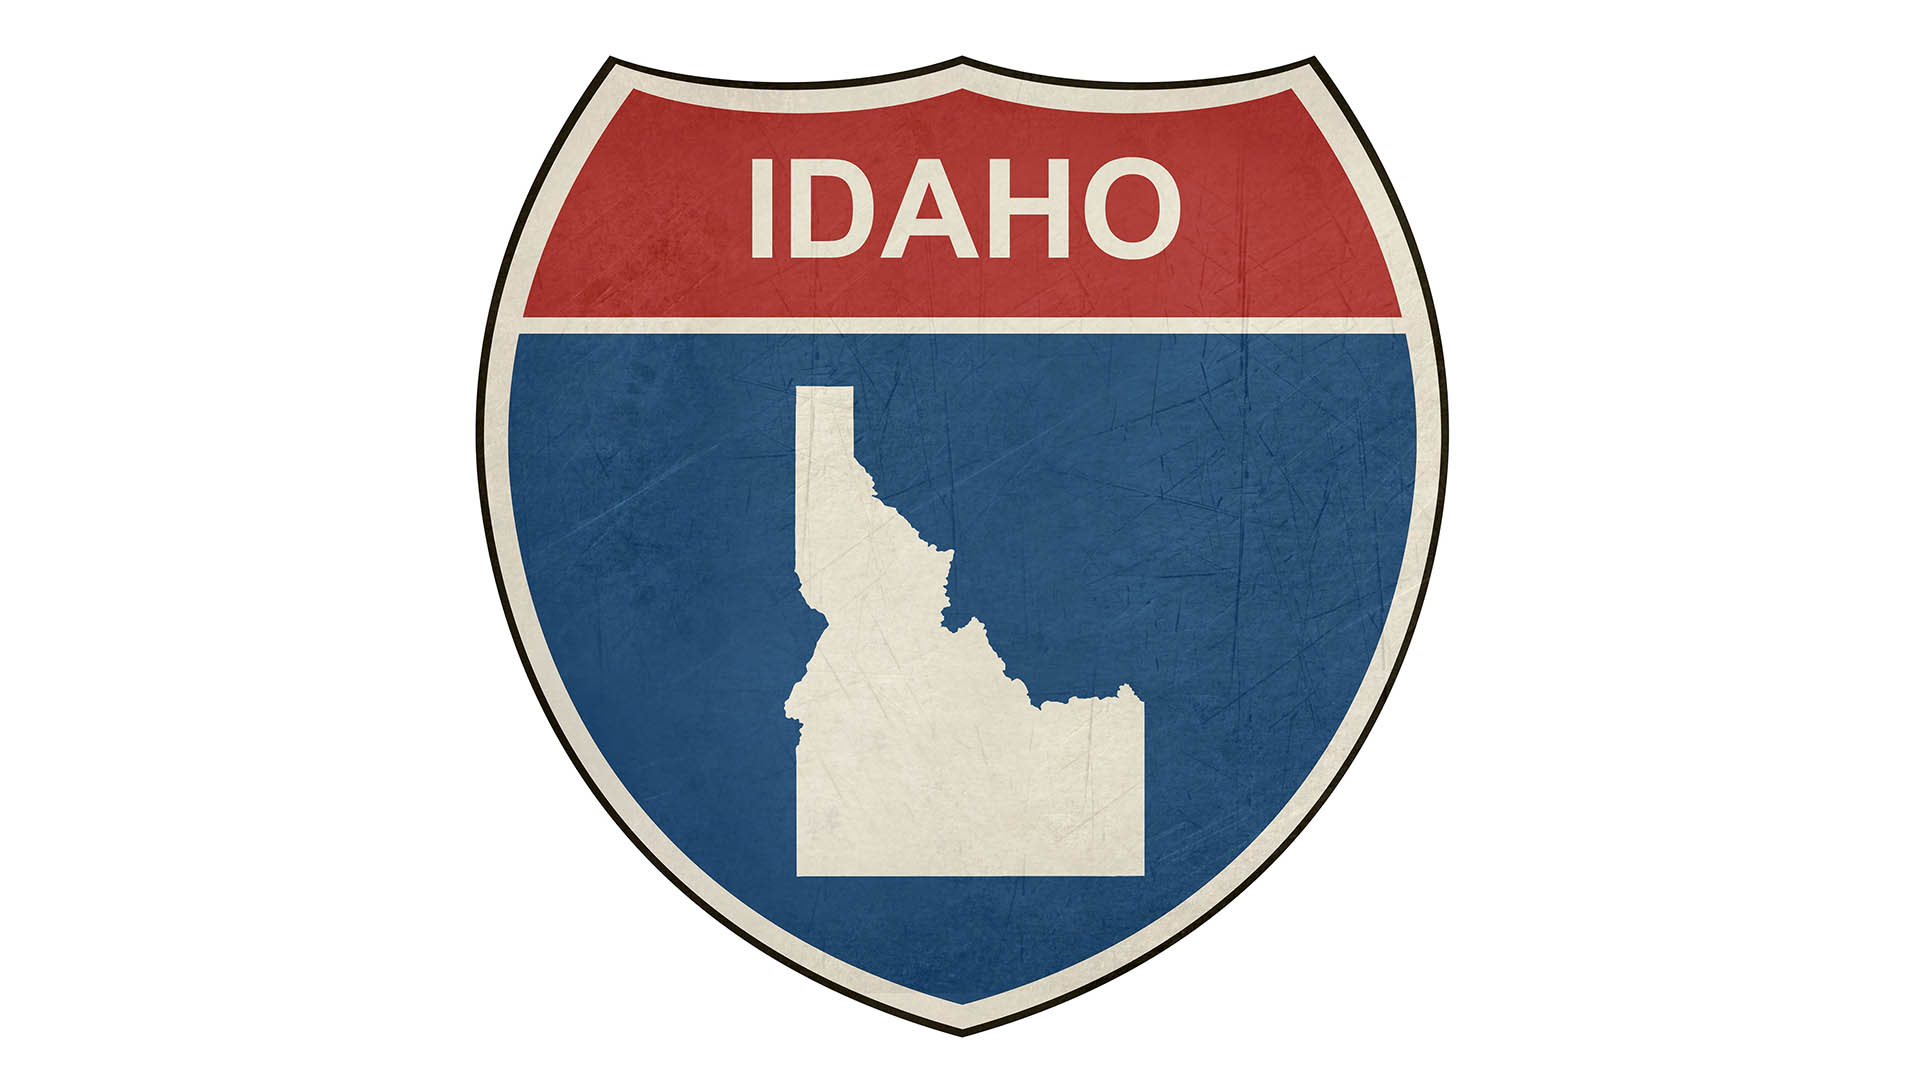 Idaho state roadside sign